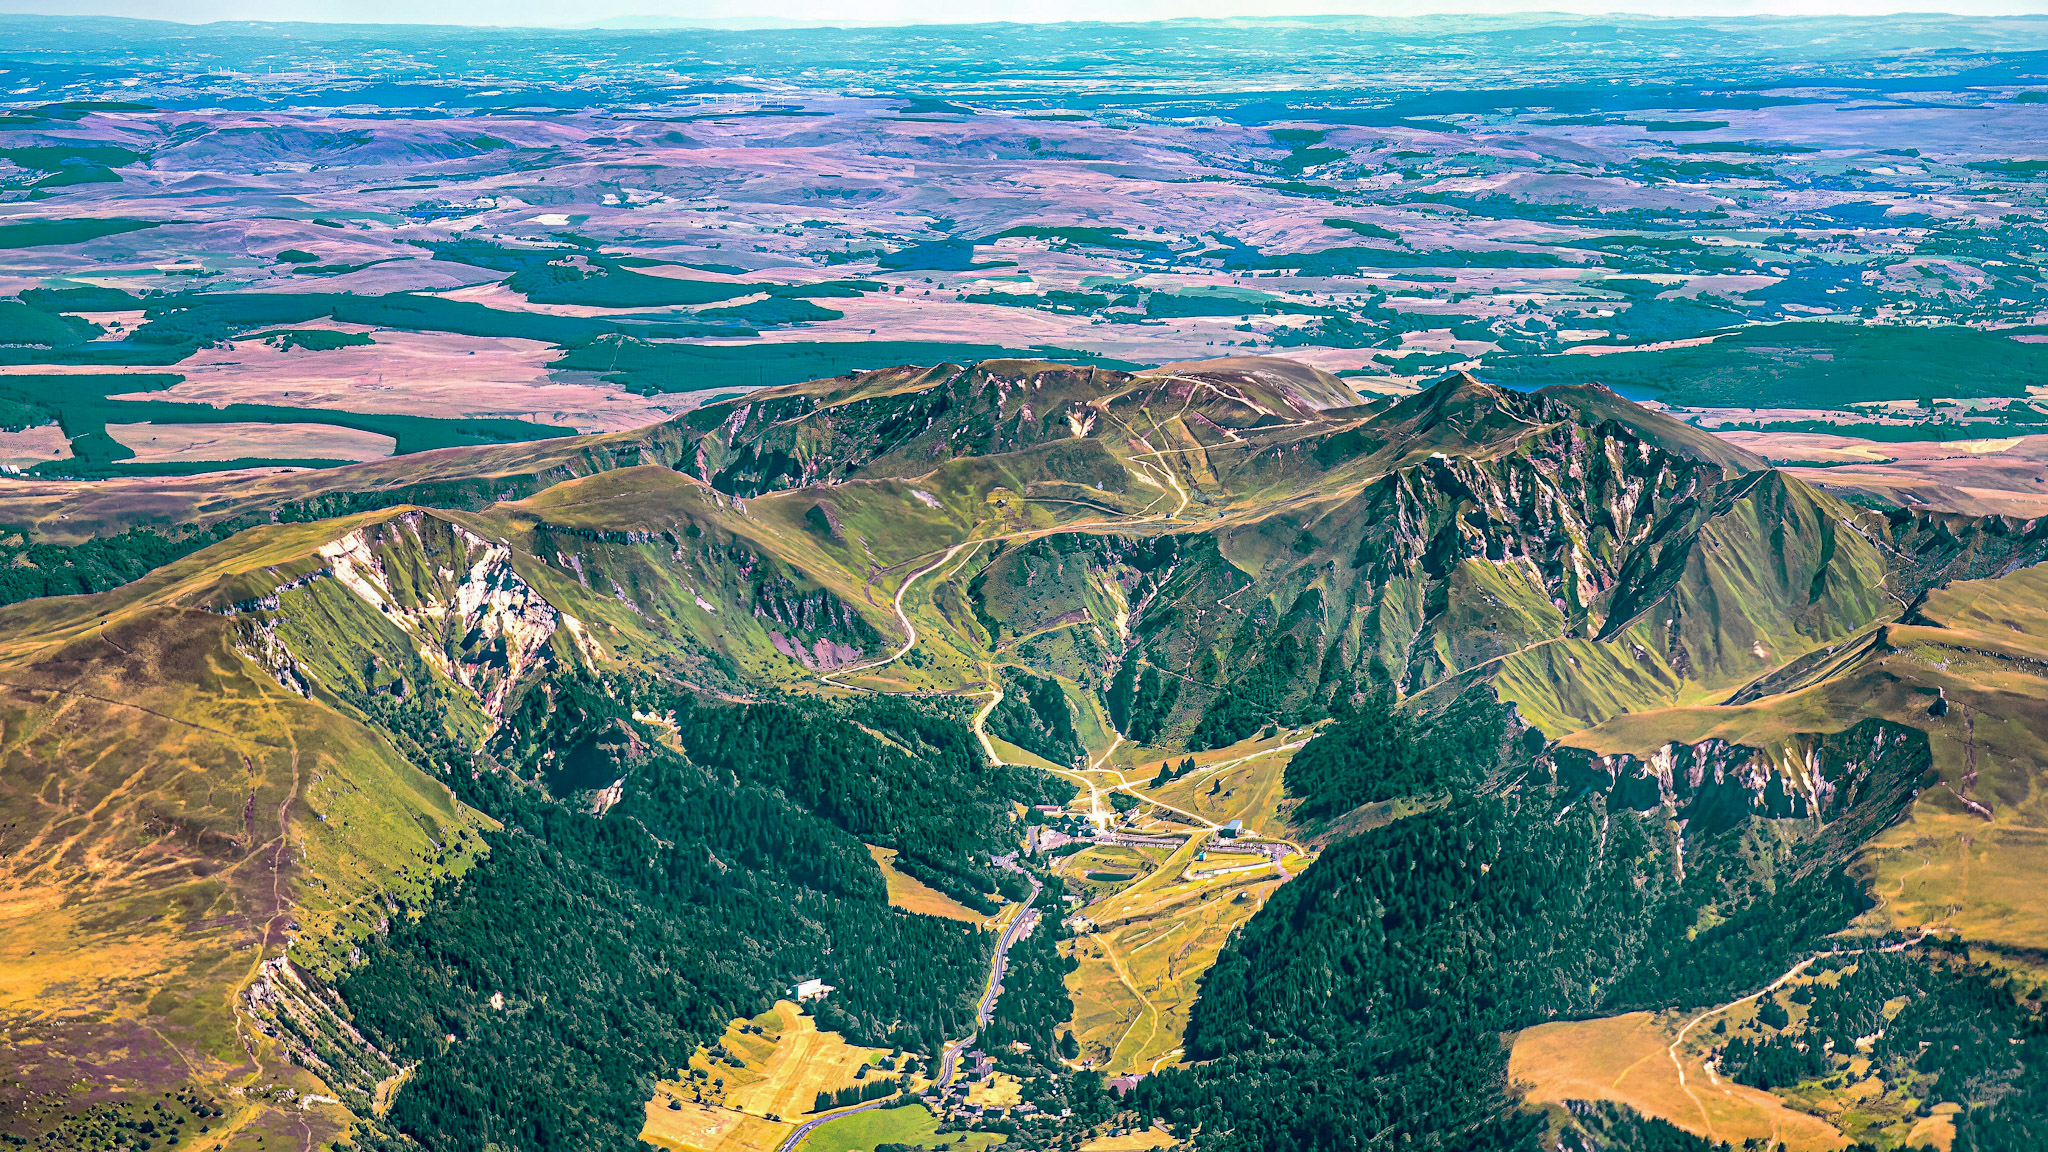 The Monts Dore, the Massif du Sancy: the Puy de Sancy, the Puy Ferrand.